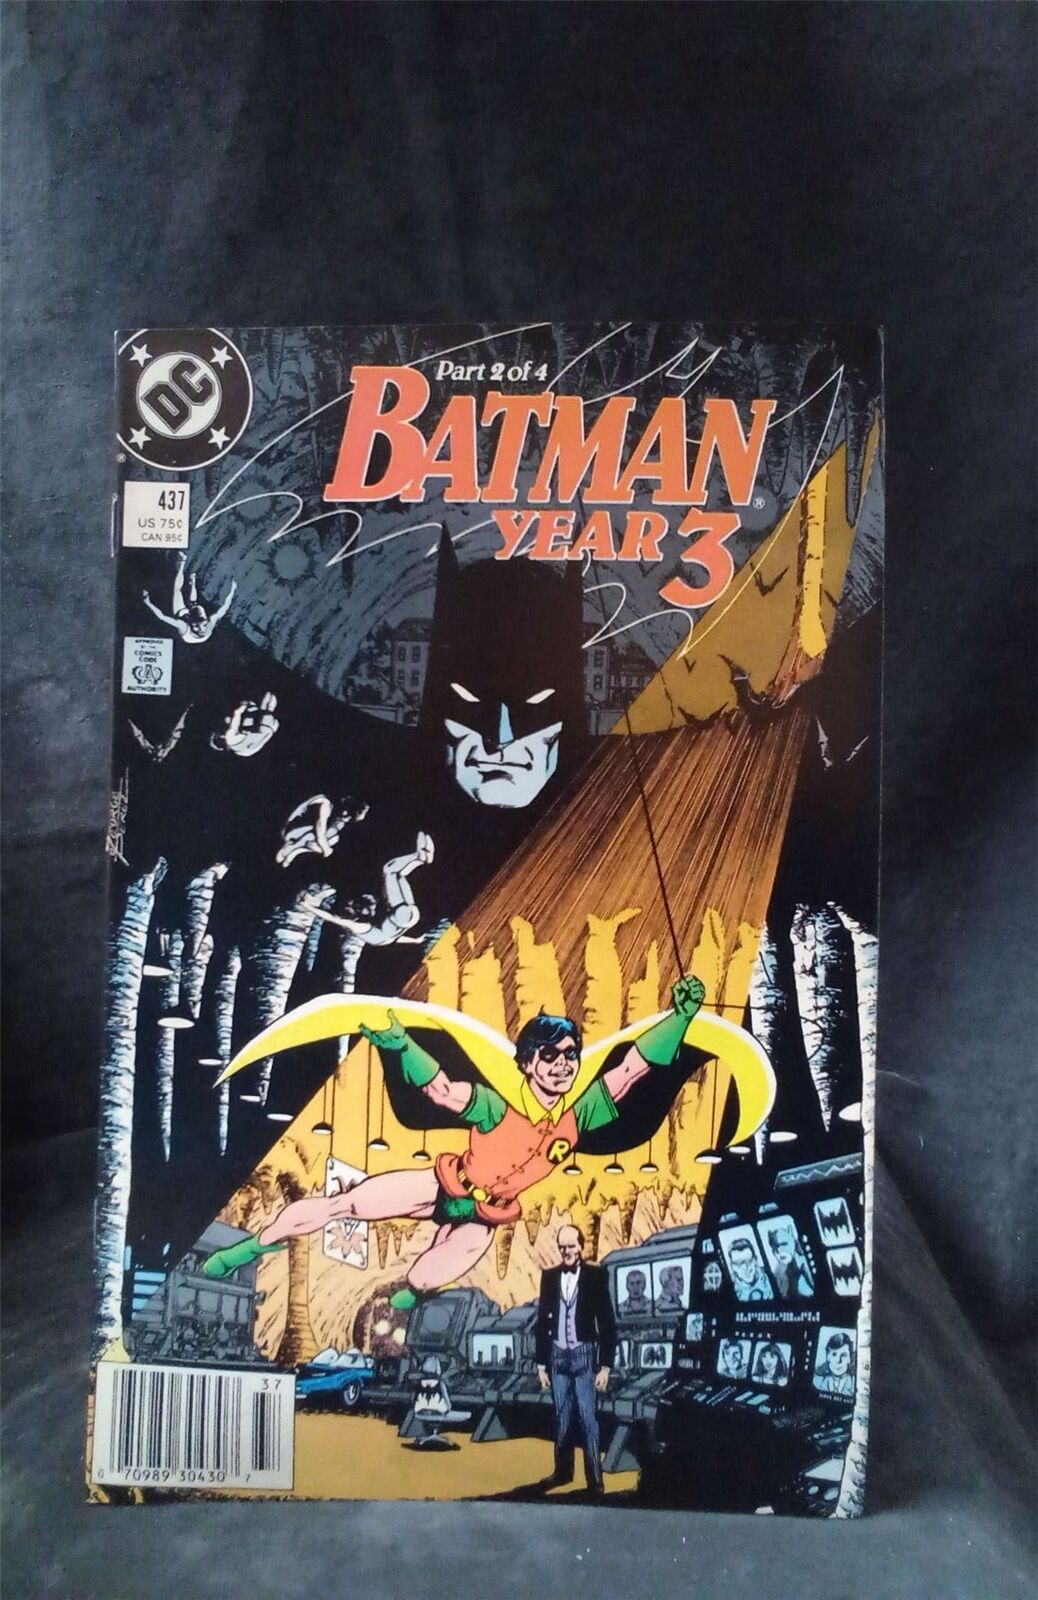 Batman #437 1989 DC Comics Comic Book 